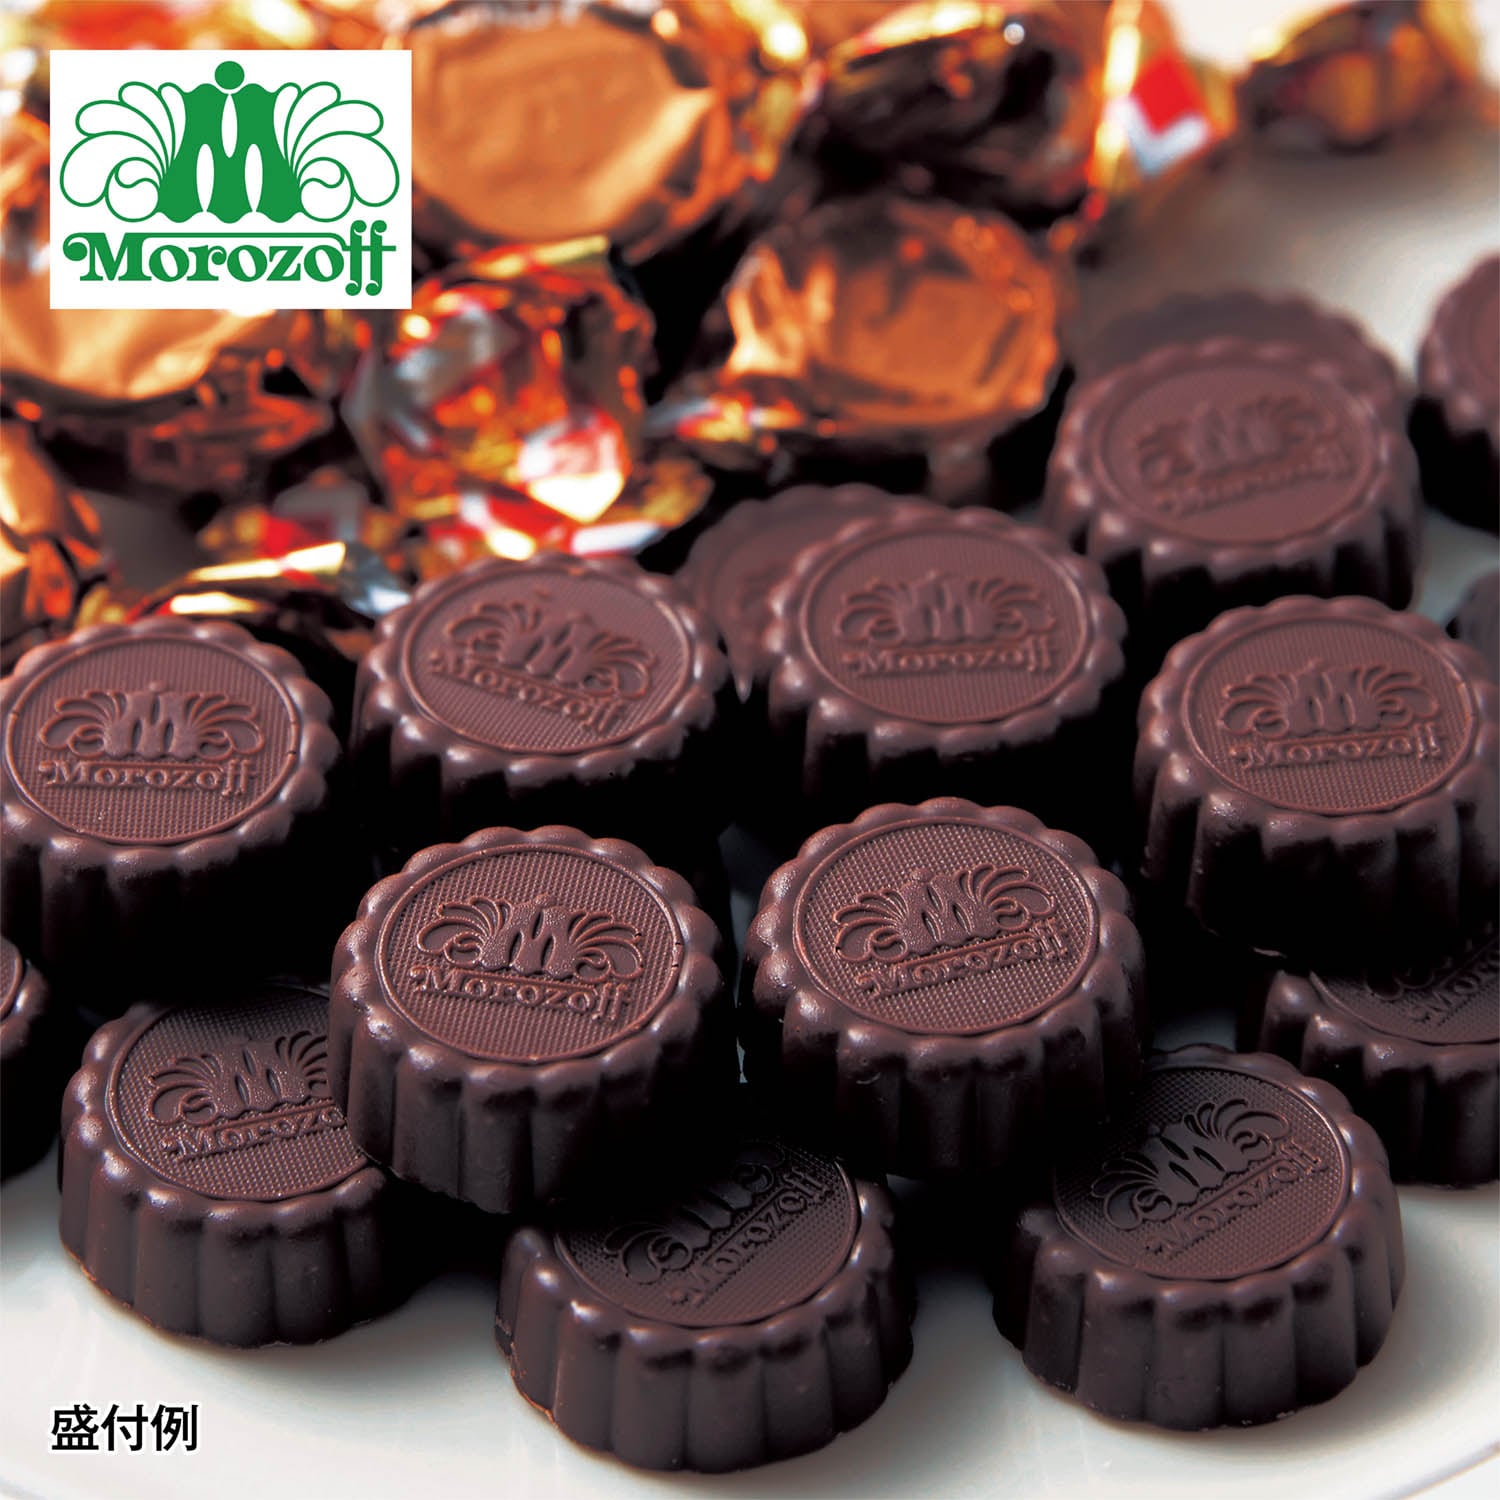 【モロゾフ】【予約商品】 ラウンドプレーン(ミルクチョコレート) 1kg